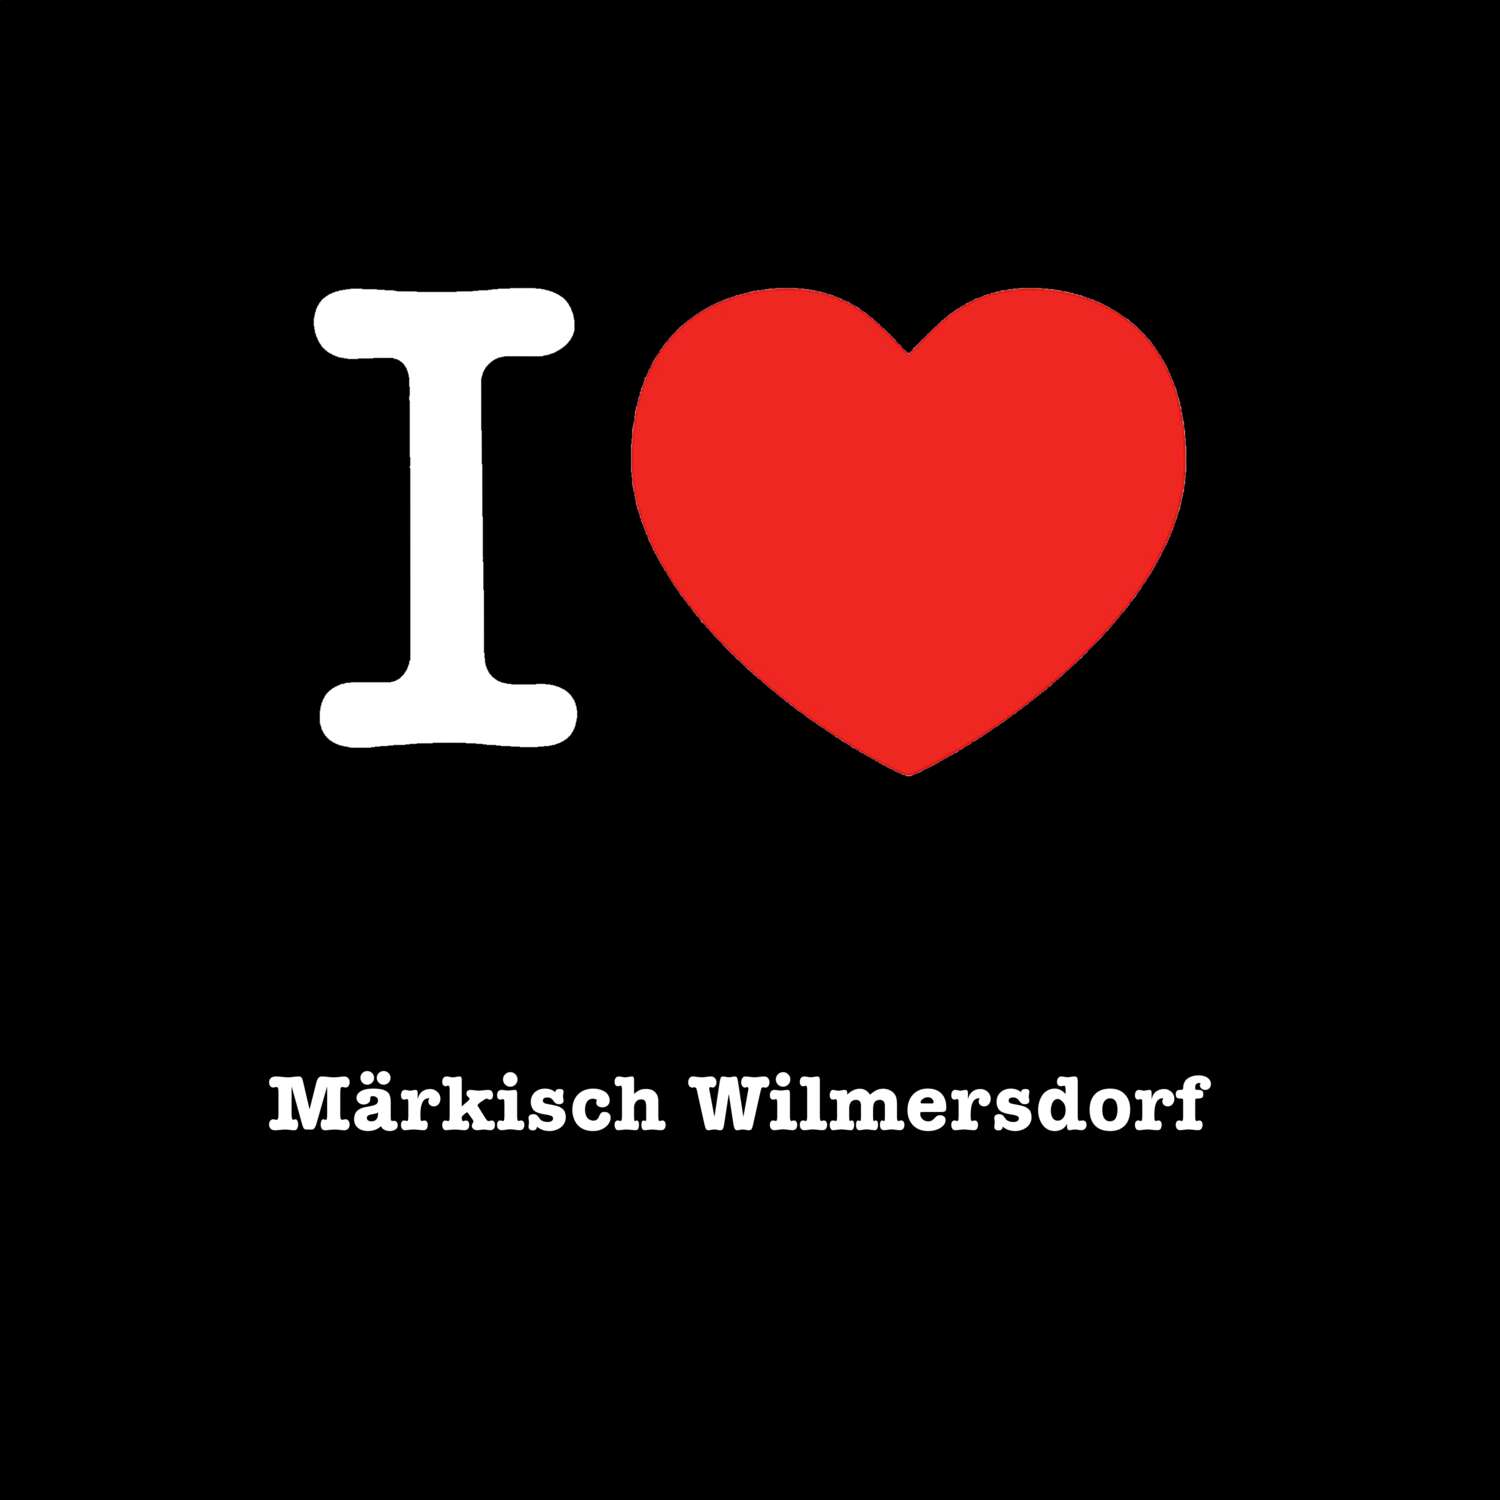 Märkisch Wilmersdorf T-Shirt »I love«